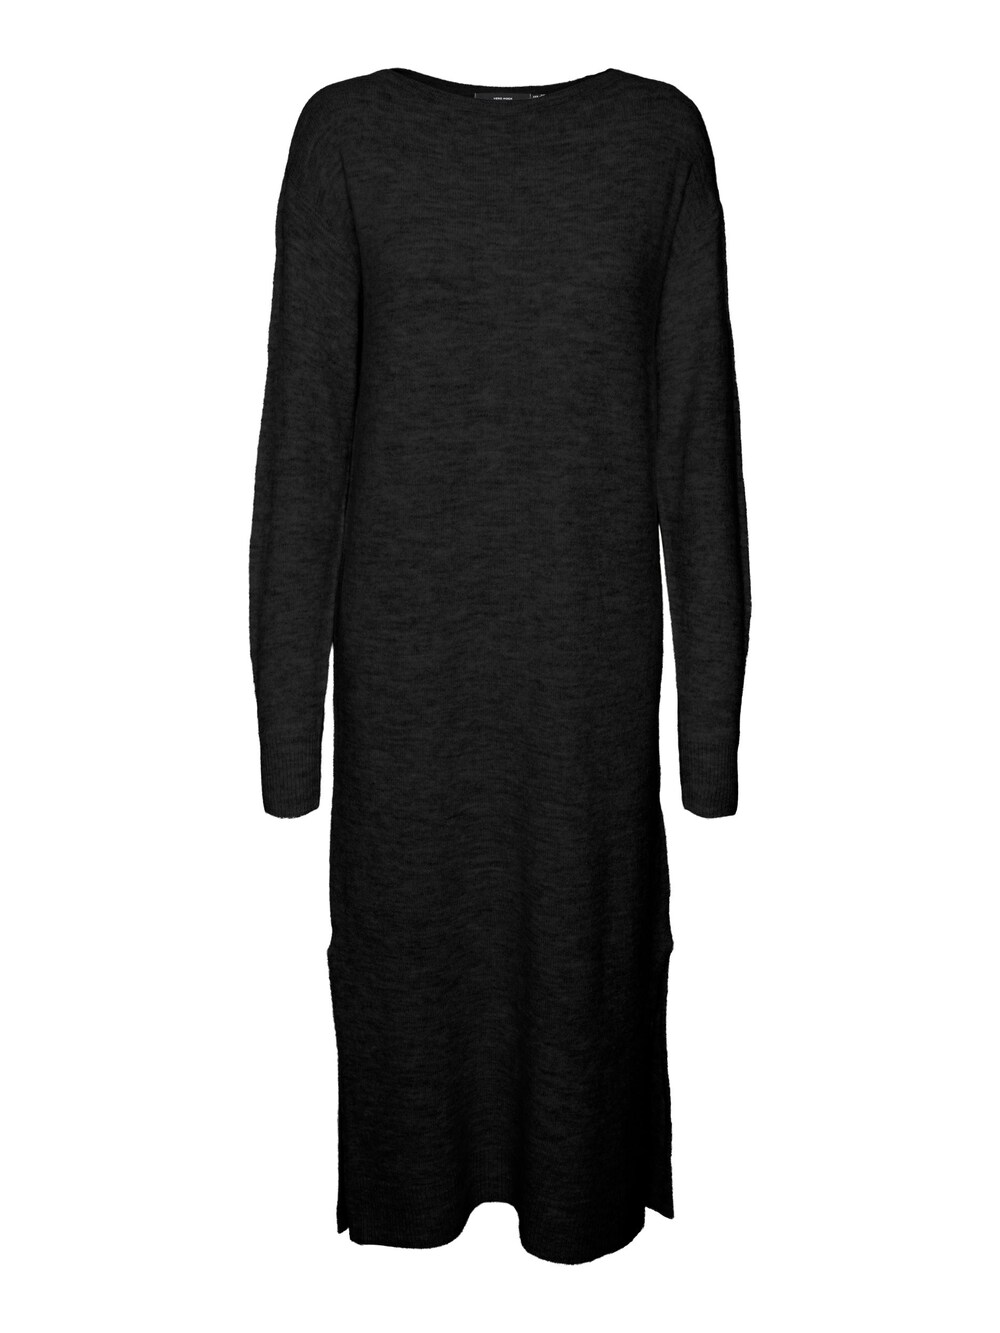 Вязанное платье Vero Moda LEFILE, черный вязанное платье vero moda phillis черный